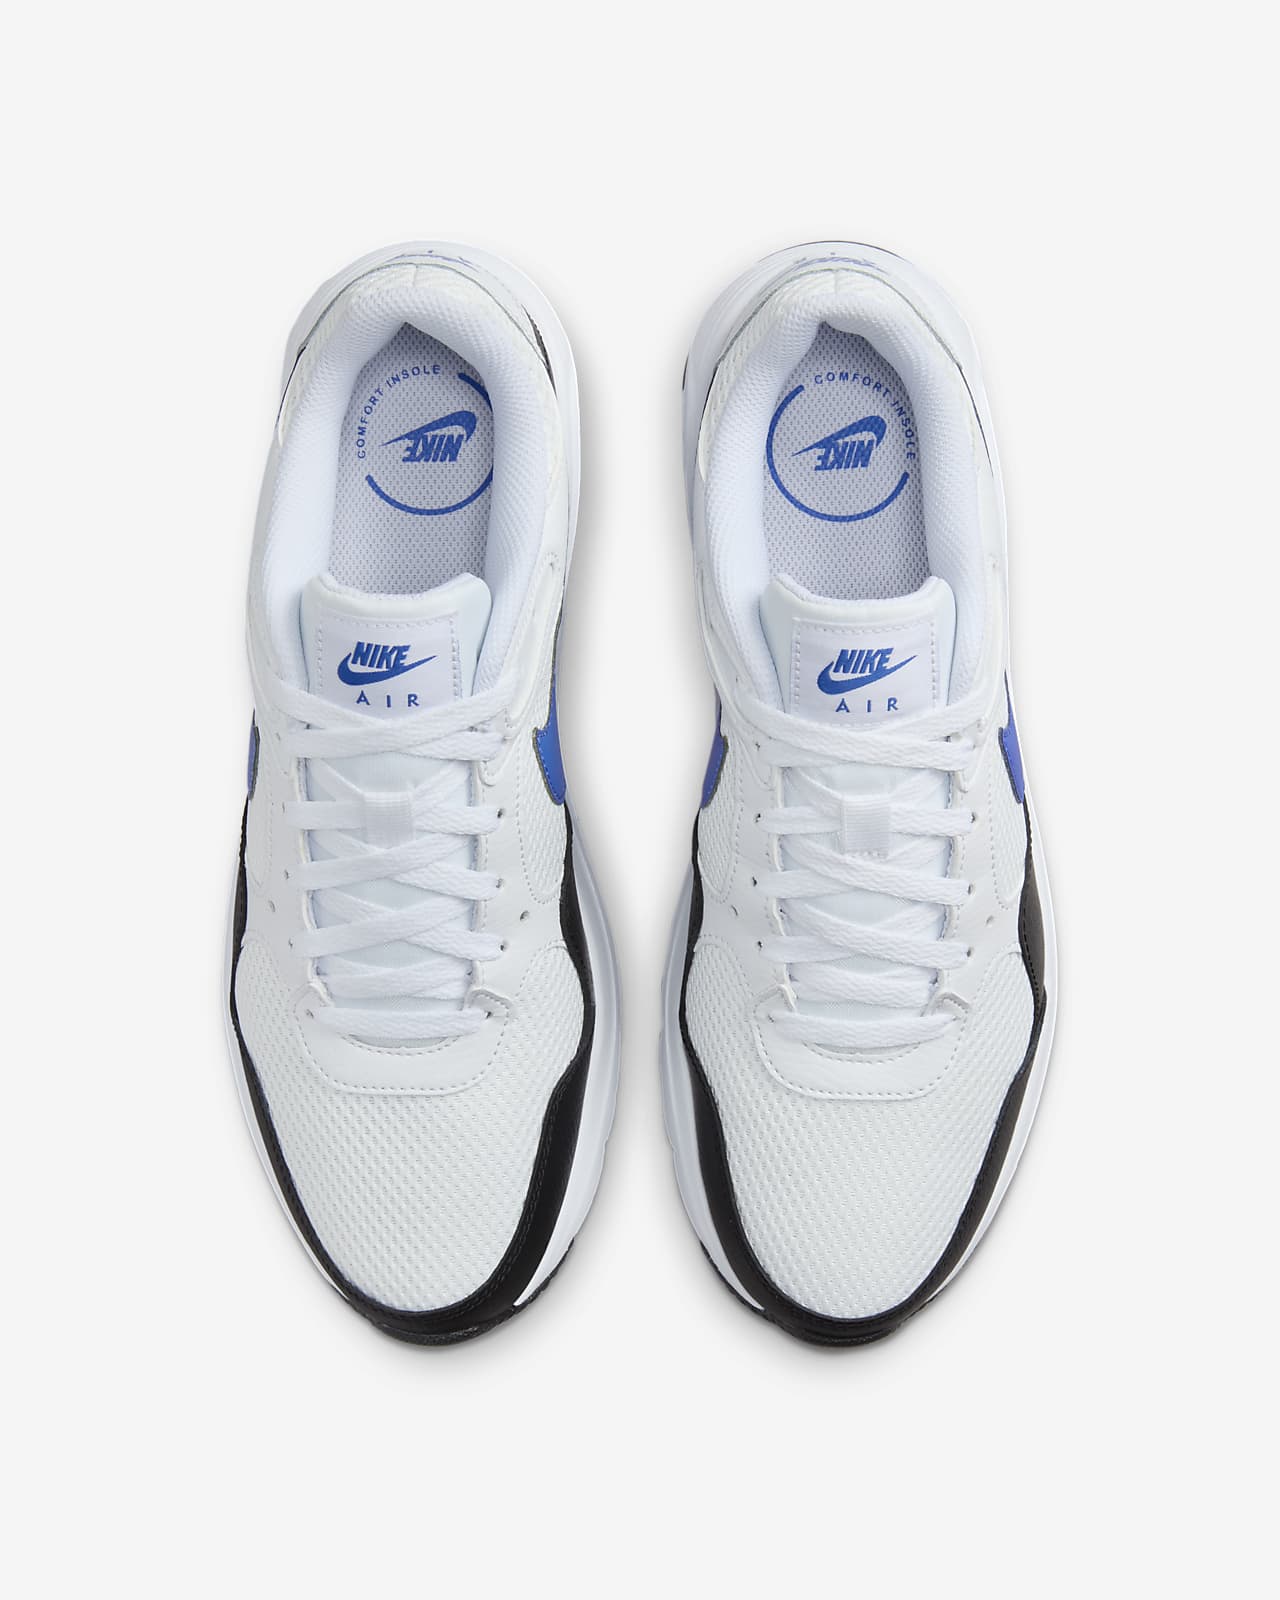 Tênis Nike Sportswear Air Max Sc Branco/Azul-Marinho - Compre Agora